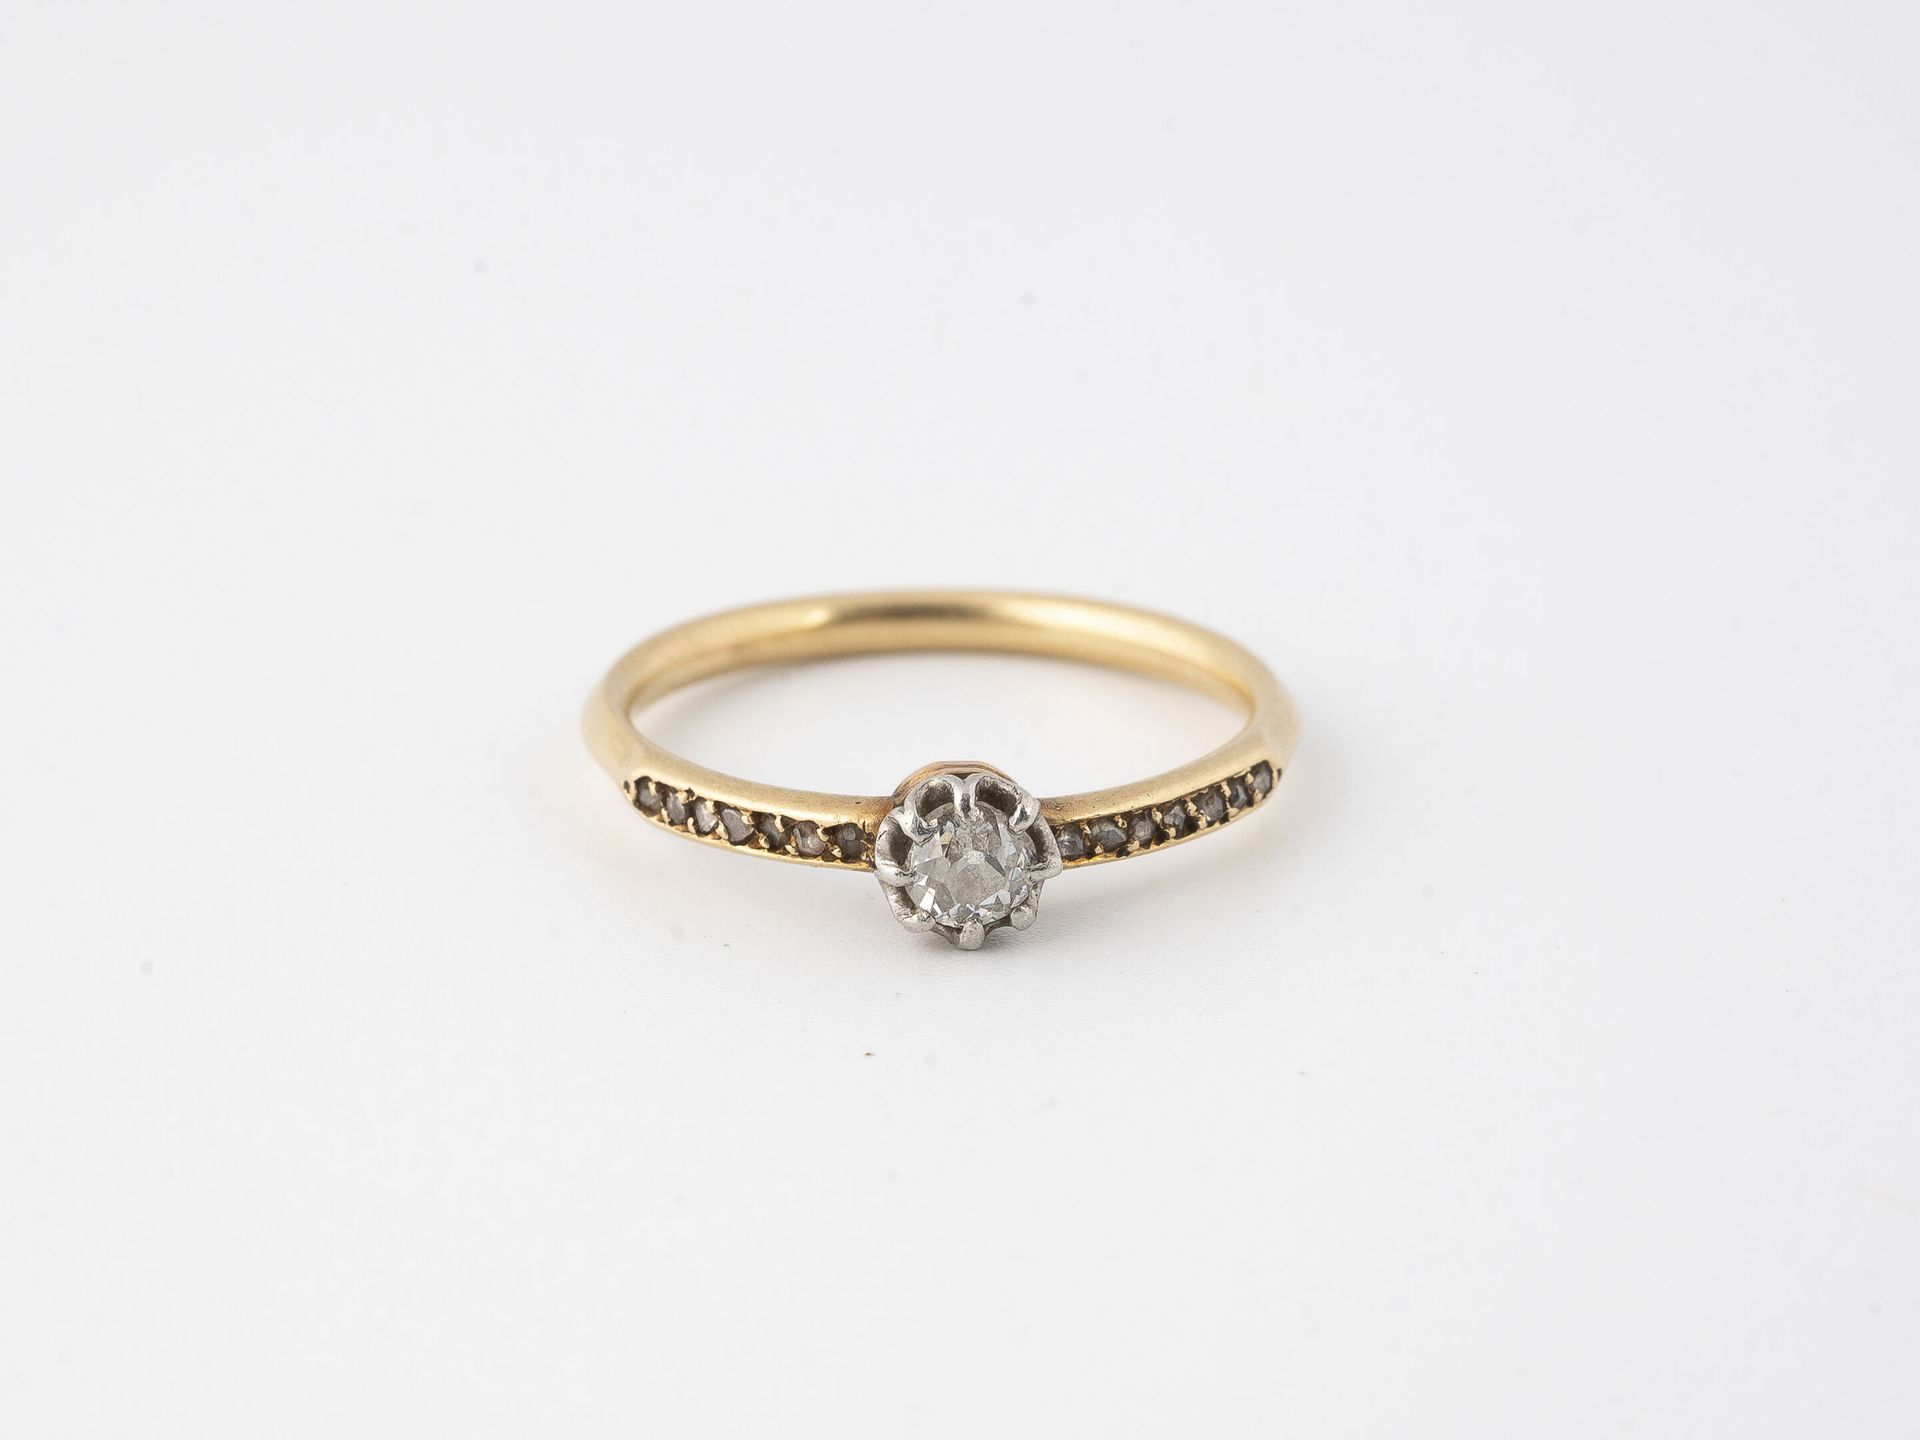 Null 黄金（750）和铂金（750）戒指，以爪式镶嵌的老式切割钻石为中心，并镶嵌小型玫瑰切割钻石。 

毛重：2.1克 - 手指尺寸：53

磨损和撕裂。